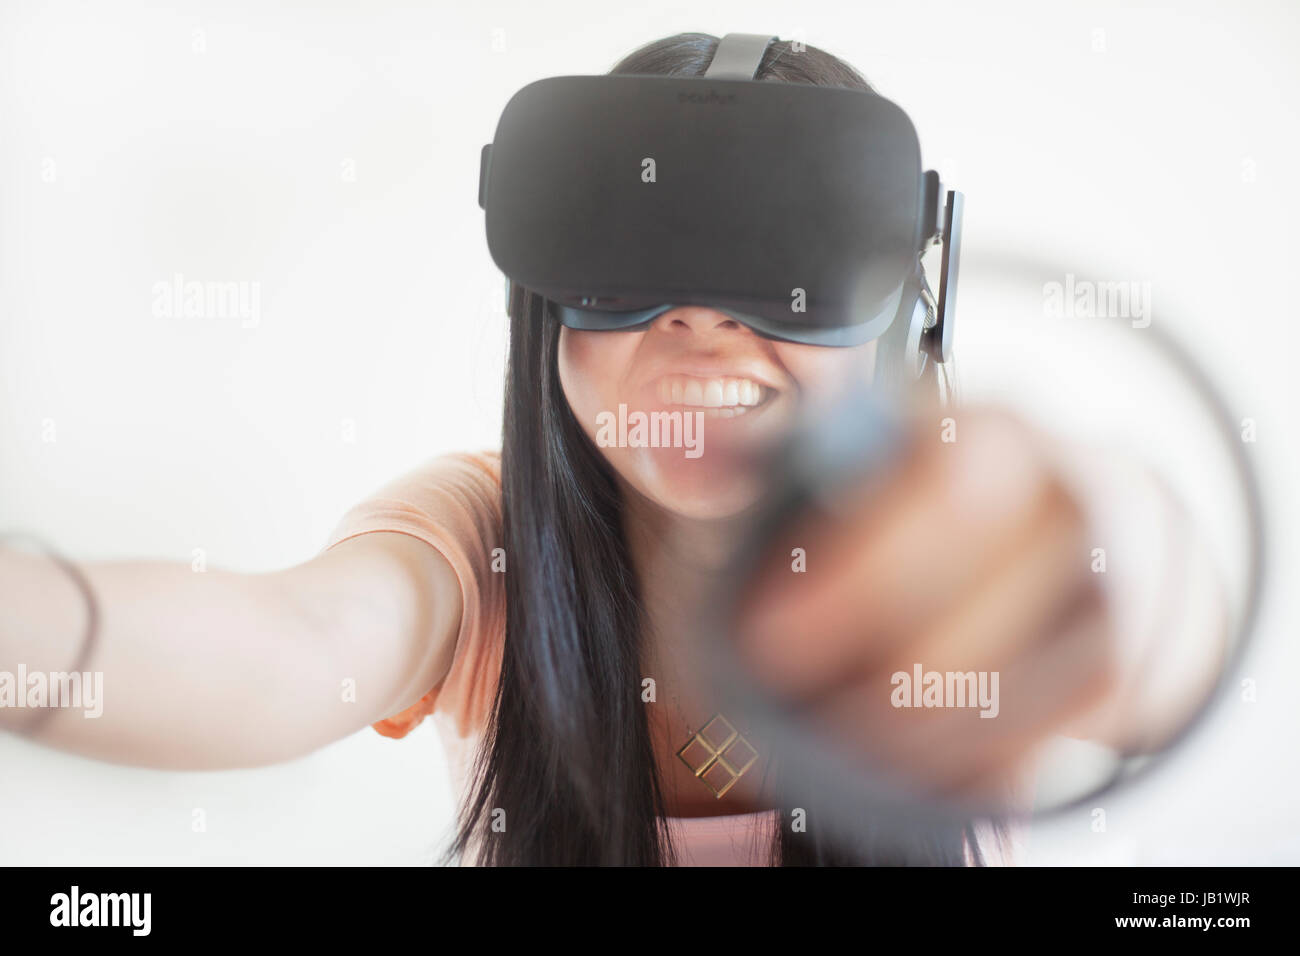 Junge asiatische Frau mit Virtual Reality headset Oculus Rift und demonstrieren, wie der Touch Control zu verwenden Stockfoto